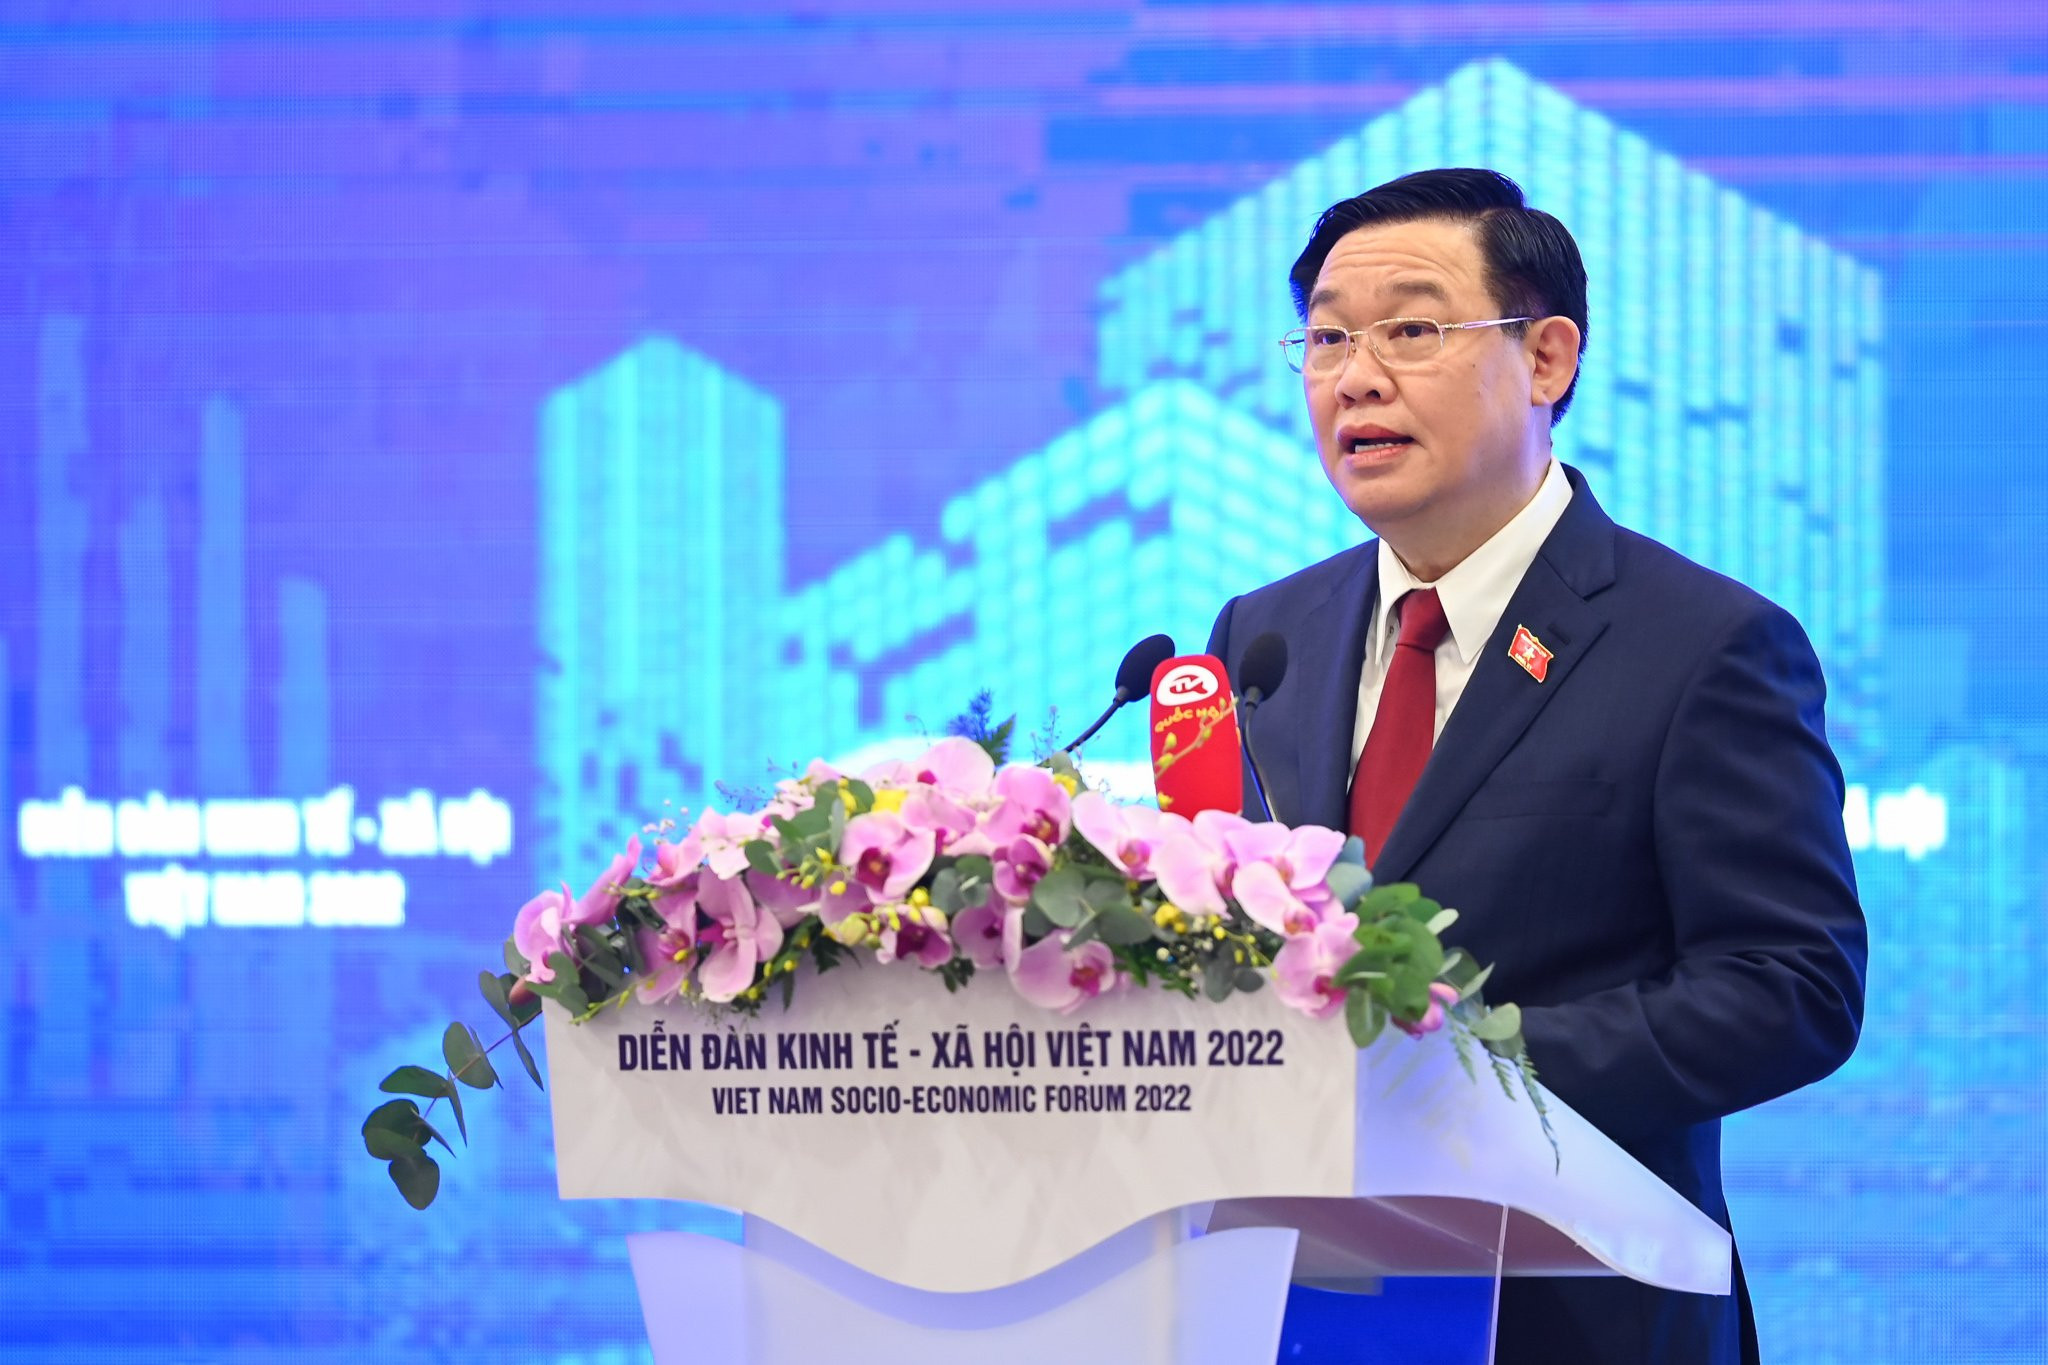 Phát biểu của Chủ tịch Quốc hội Vương Đình Huệ tại Diễn đàn kinh tế xã hội Việt Nam 2022